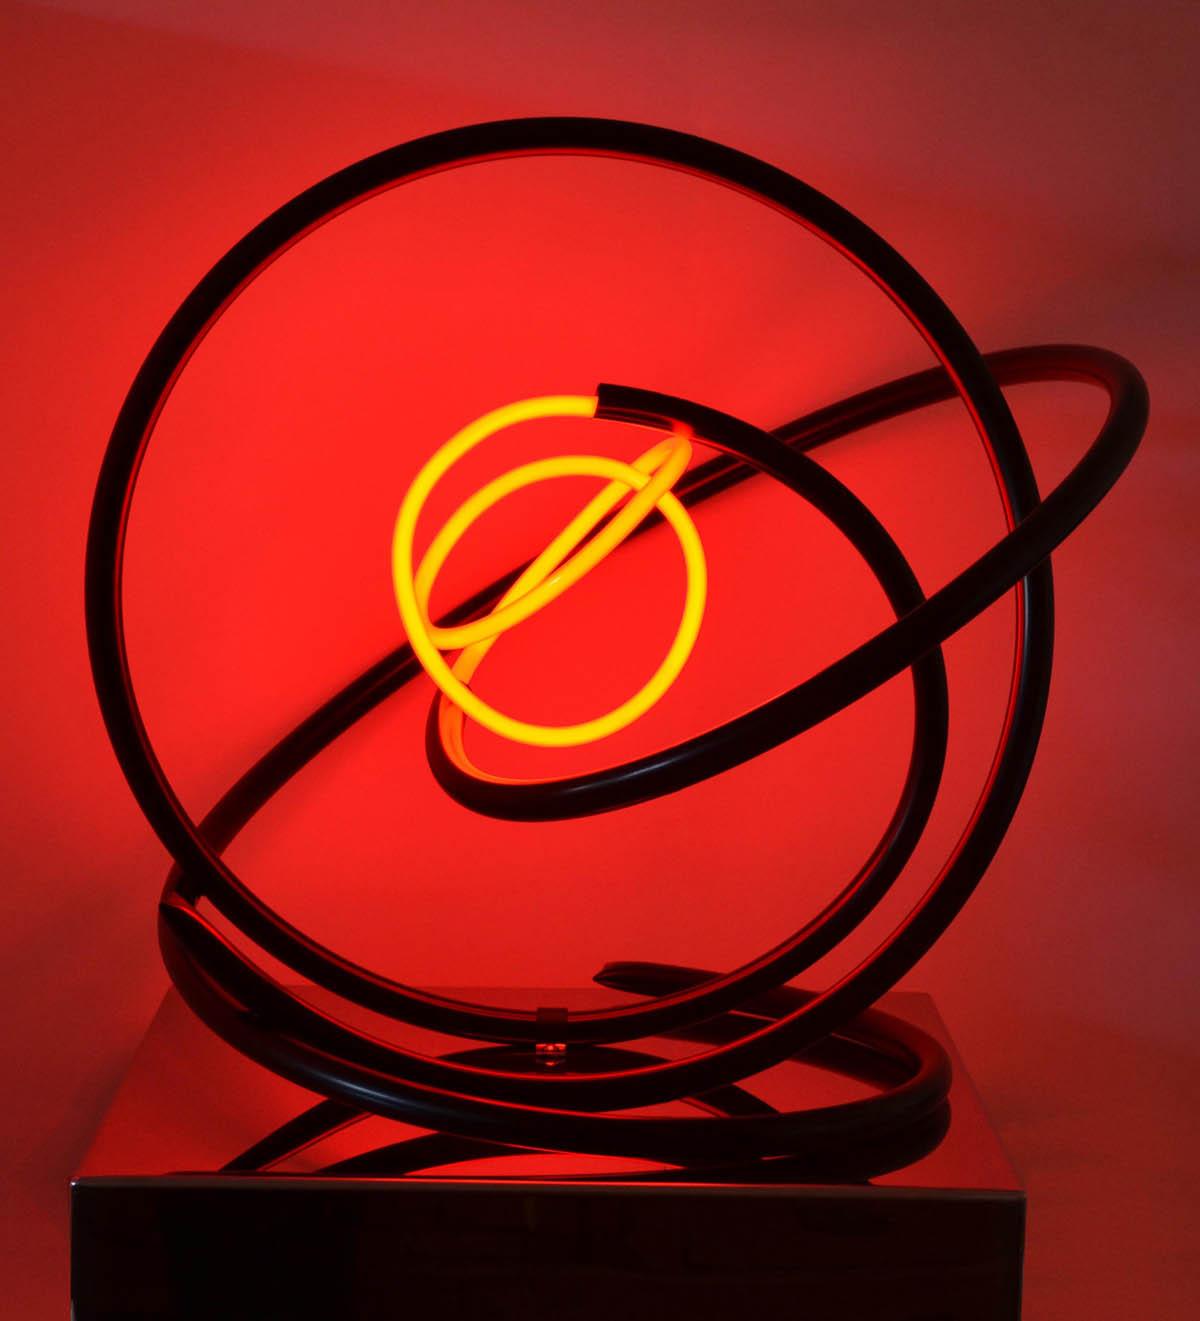 Sculpture - "Red Neon Orb" de Mark Beattie 2017

80 x 65 x 65cm
Néon rouge, cuivre thermolaqué sur socle en acier inoxydable poli miroir.

red Neon Orb" est l'une des plus grandes sculptures au néon réalisées par Mark et sa première avec du néon